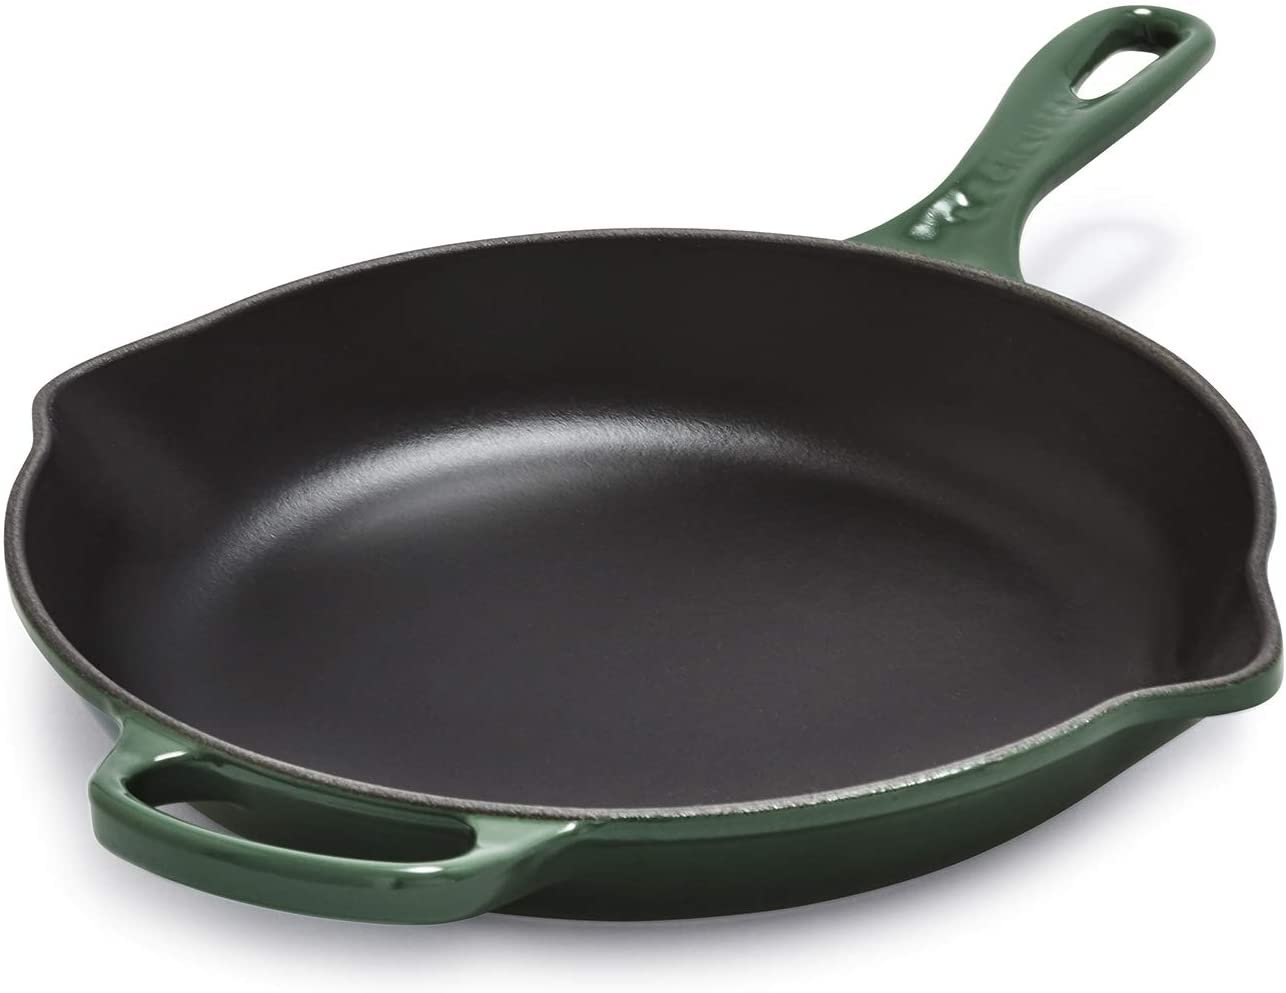 creuset cast iron pan.jpg